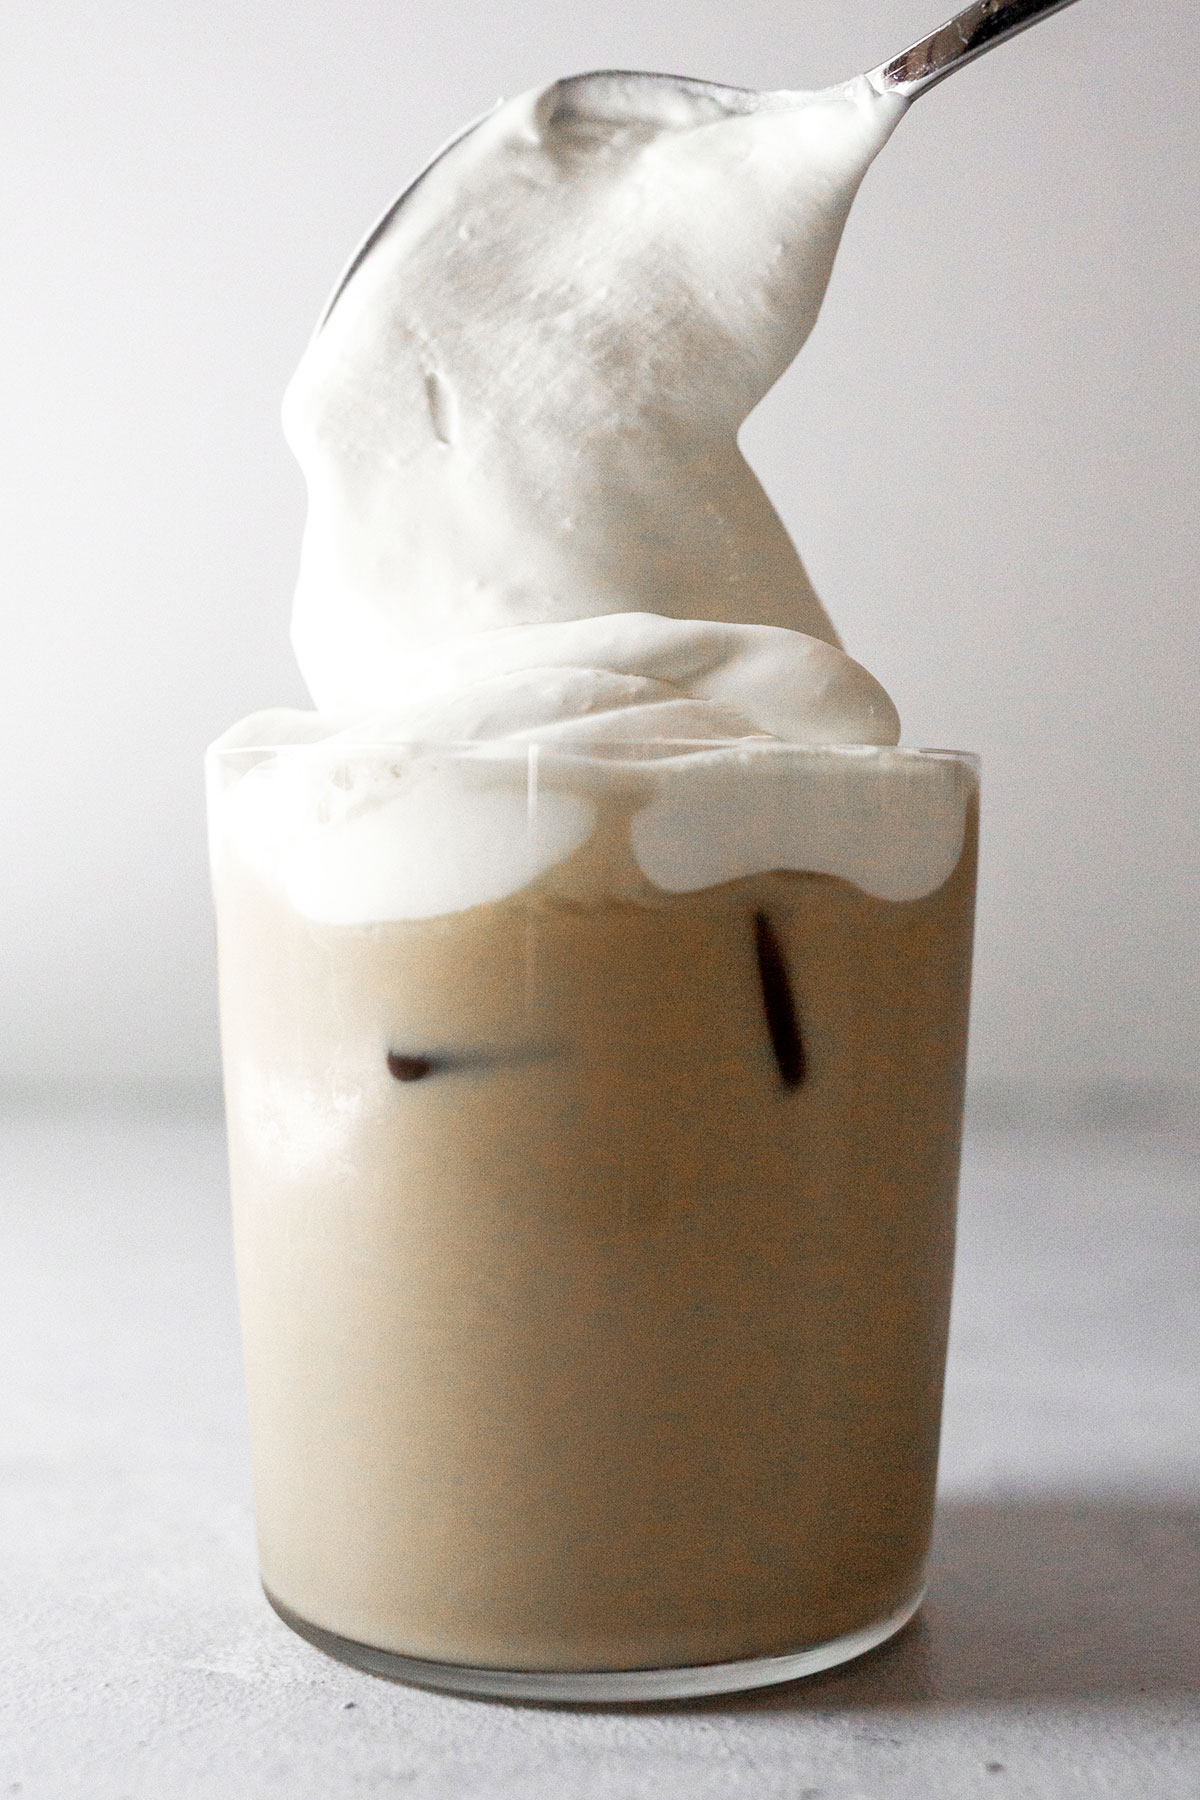 Schep op roomtopping op ijs vanille latte.